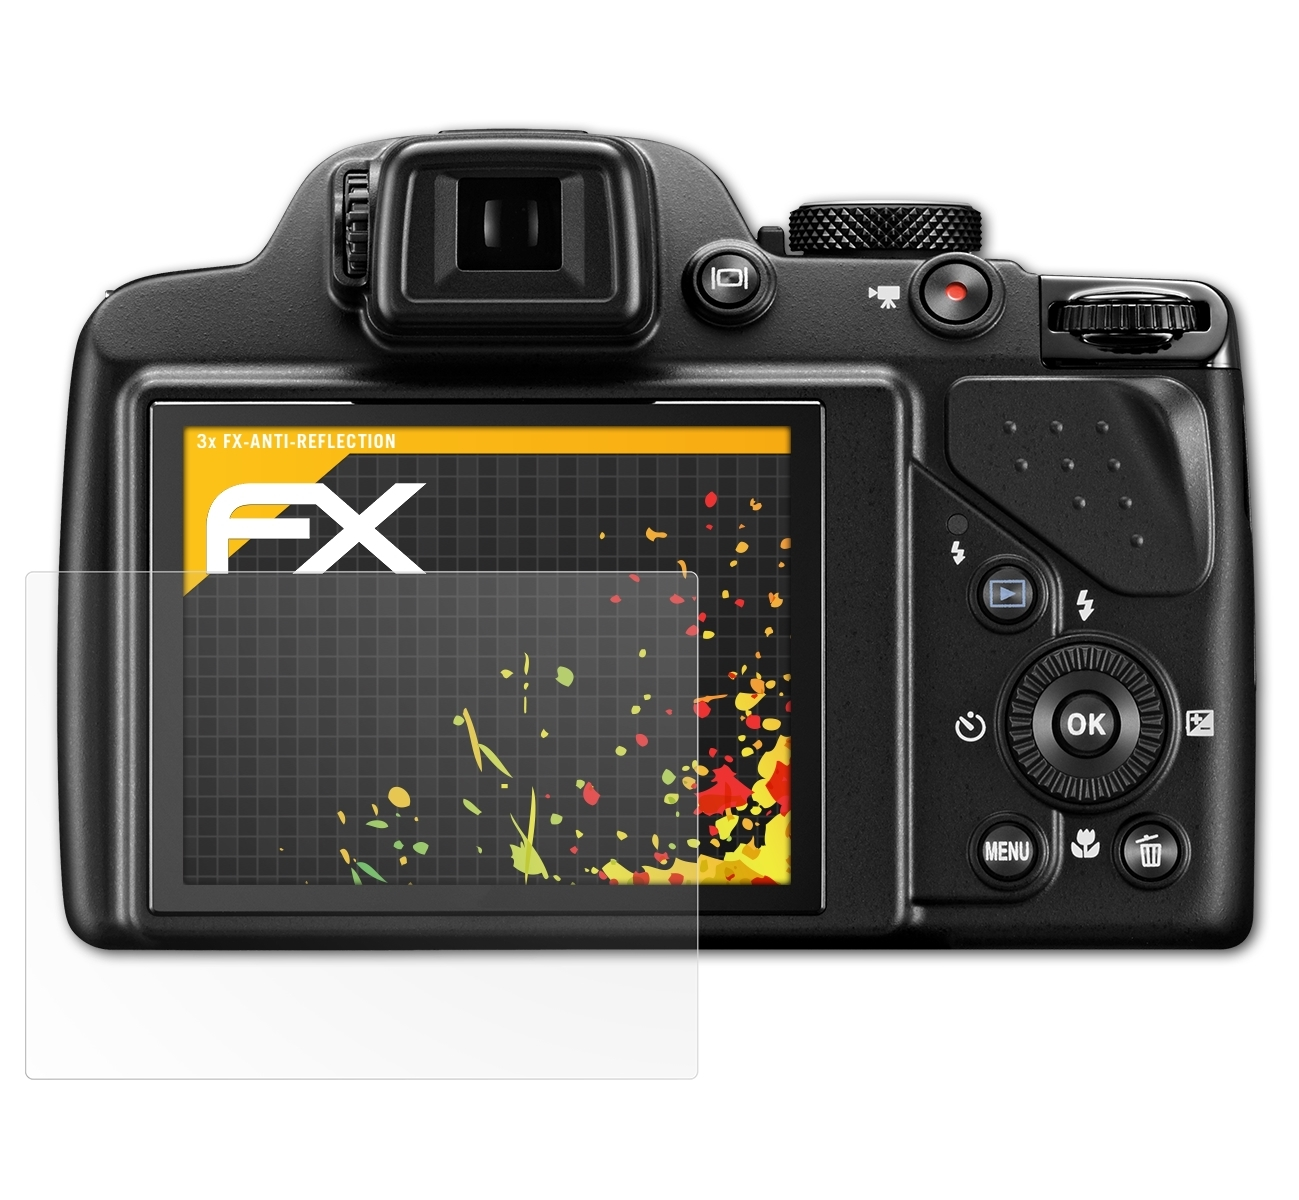 ATFOLIX 3x FX-Antireflex Displayschutz(für Nikon P530) Coolpix